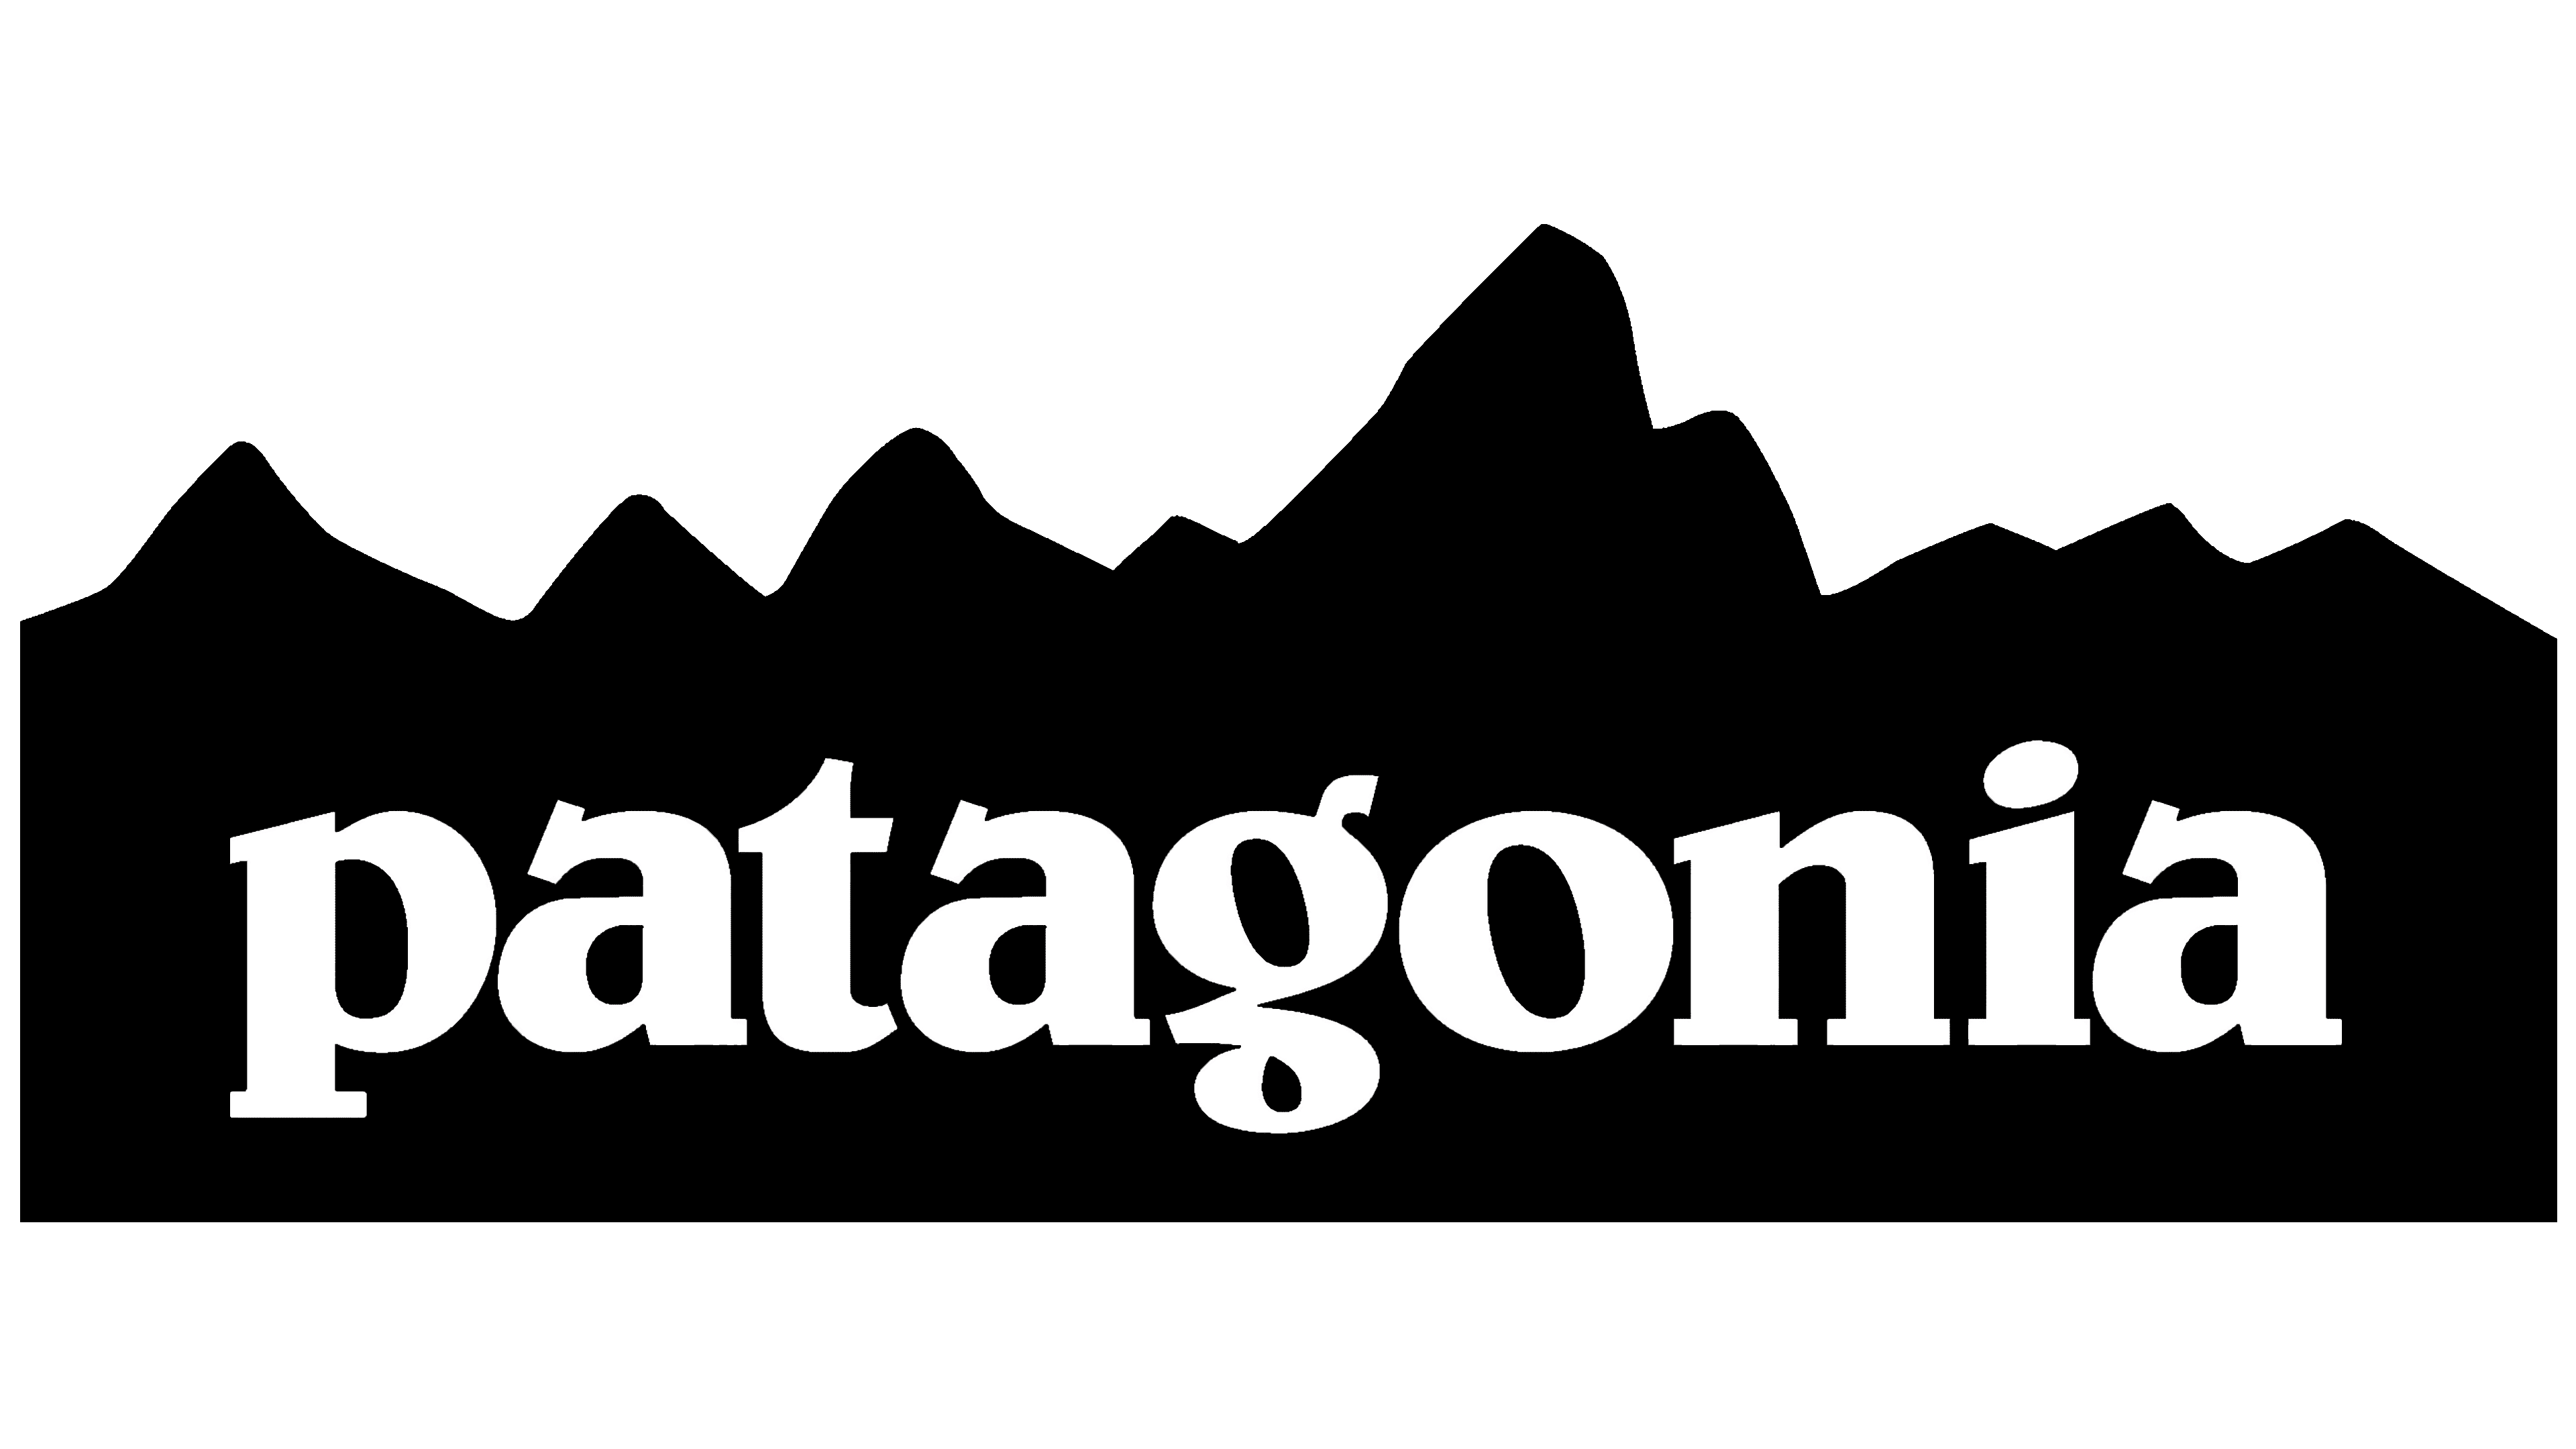 Patagonia logo image